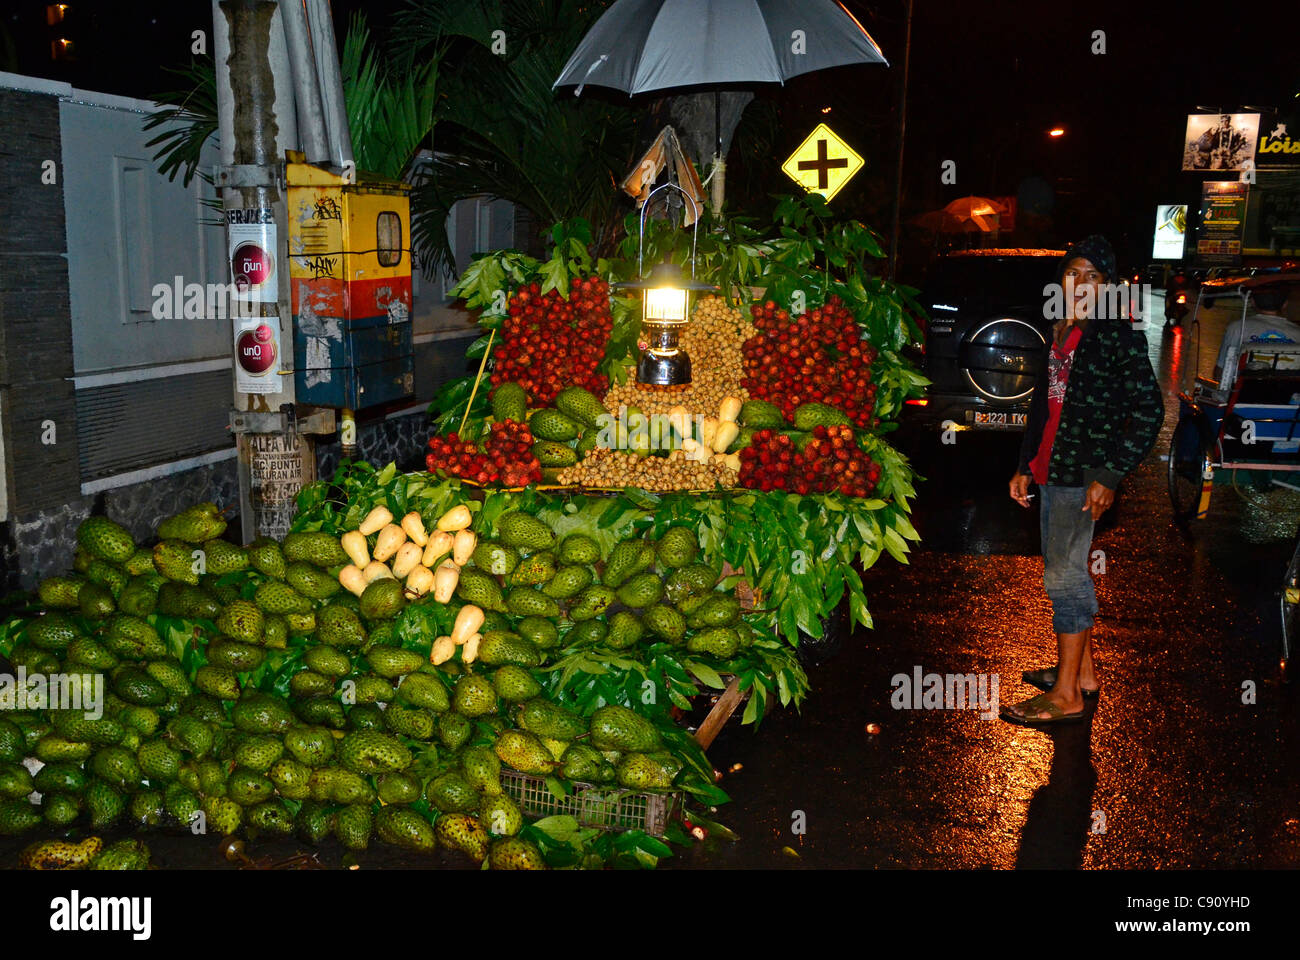 Obstverkäufer verkaufen waren auf Straße von Makassar, Indonesien Stockfoto